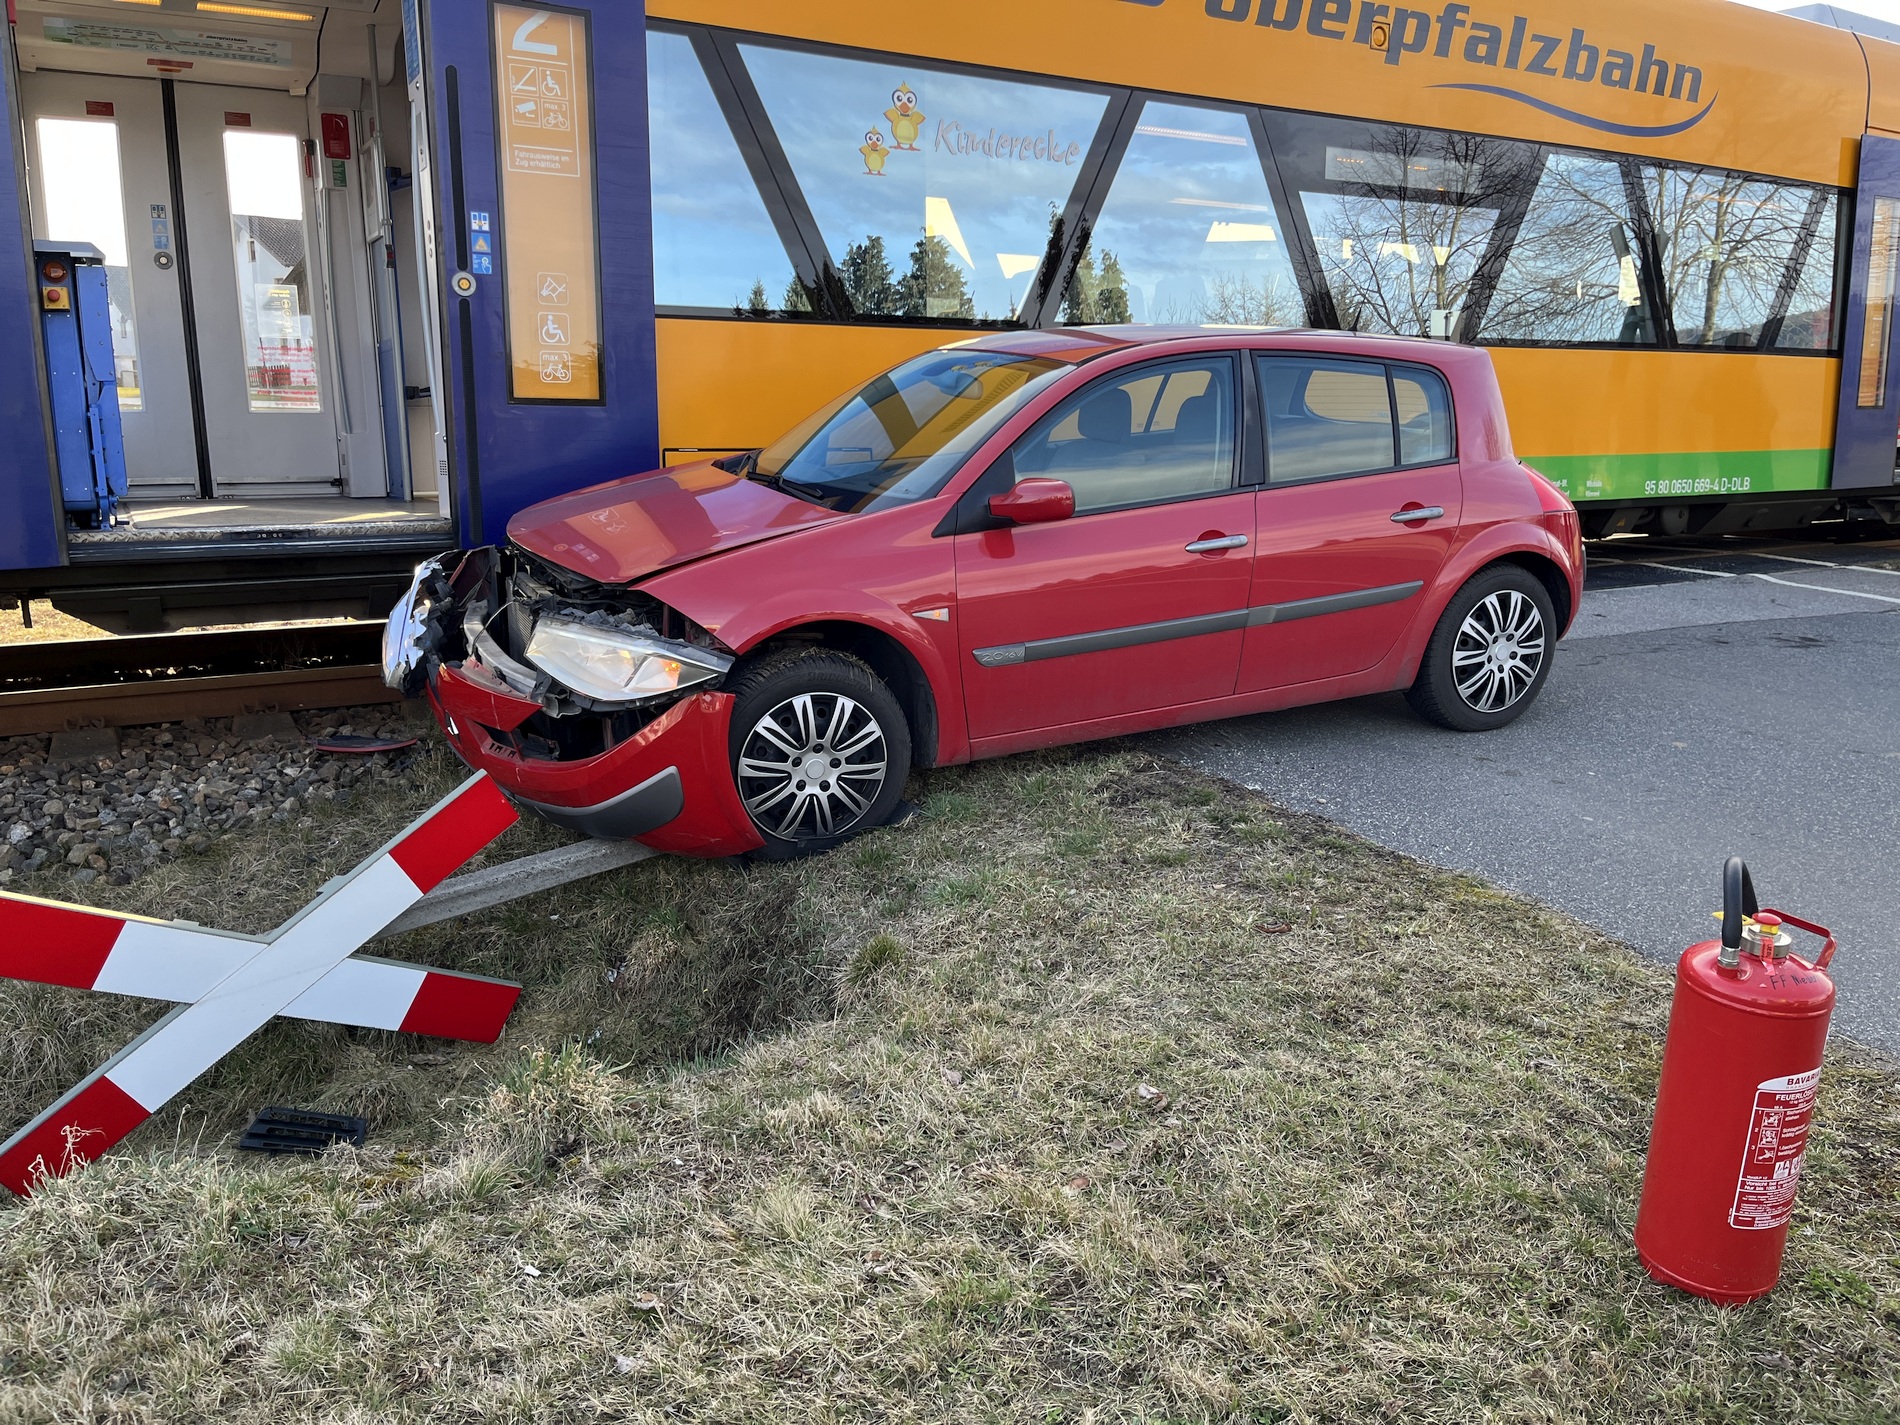 Glimpflich ging der Verkehrsunfall zwischen PKW und Oberpfalzbahn am Montag aus Foto: Kreisbrandinspektion Cham